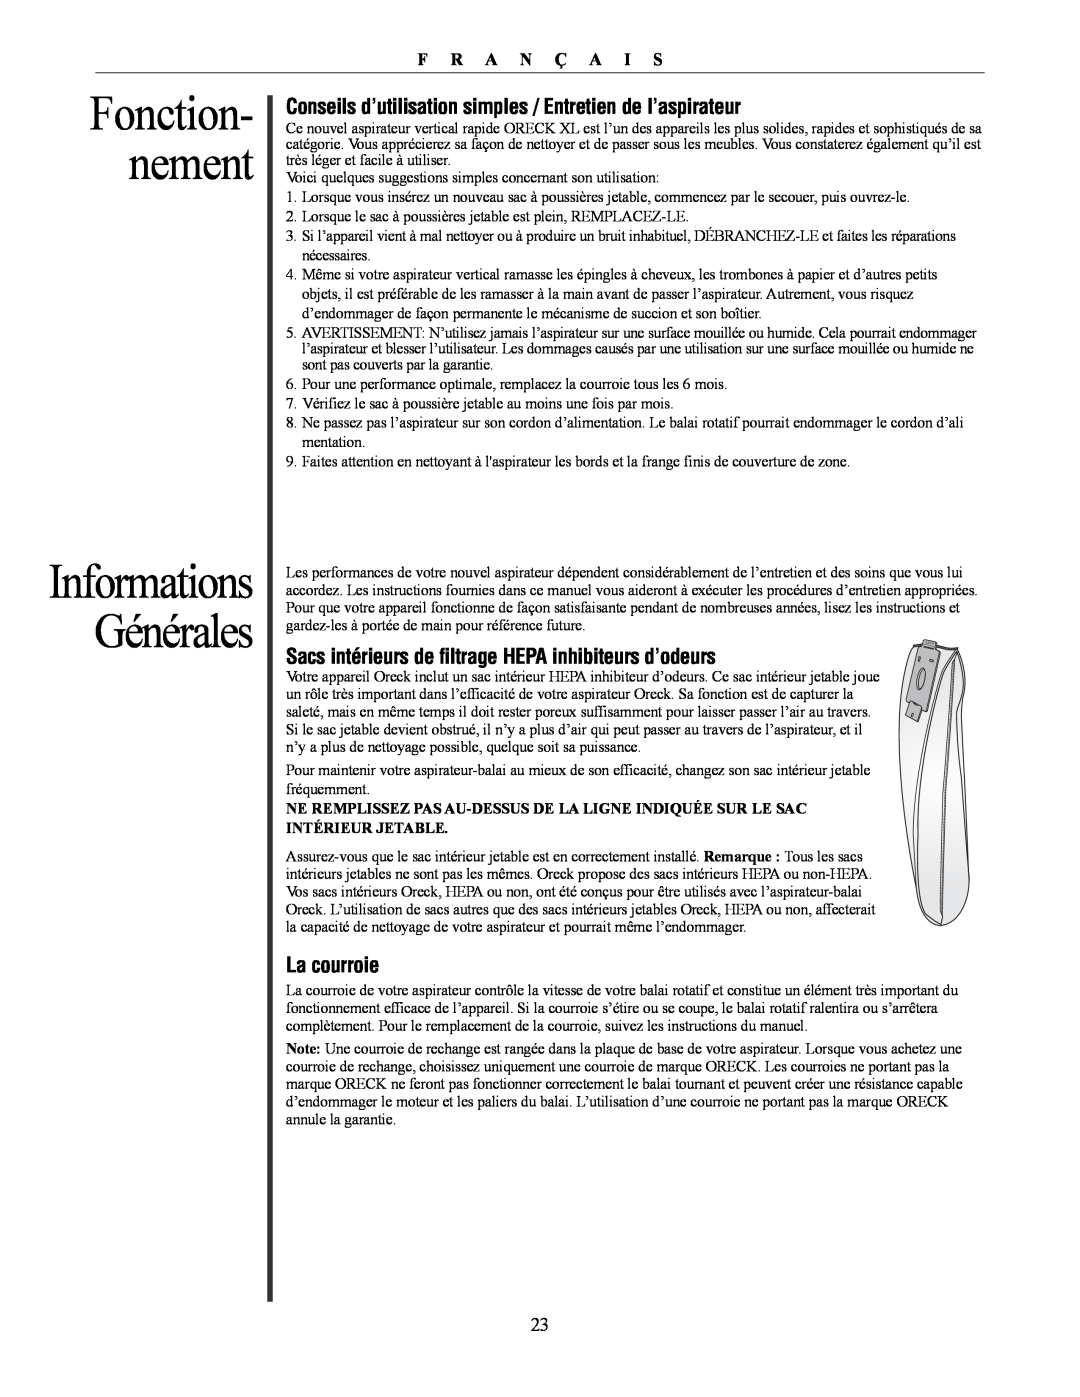 Oreck David manual Fonction- nement, Informations Générales 